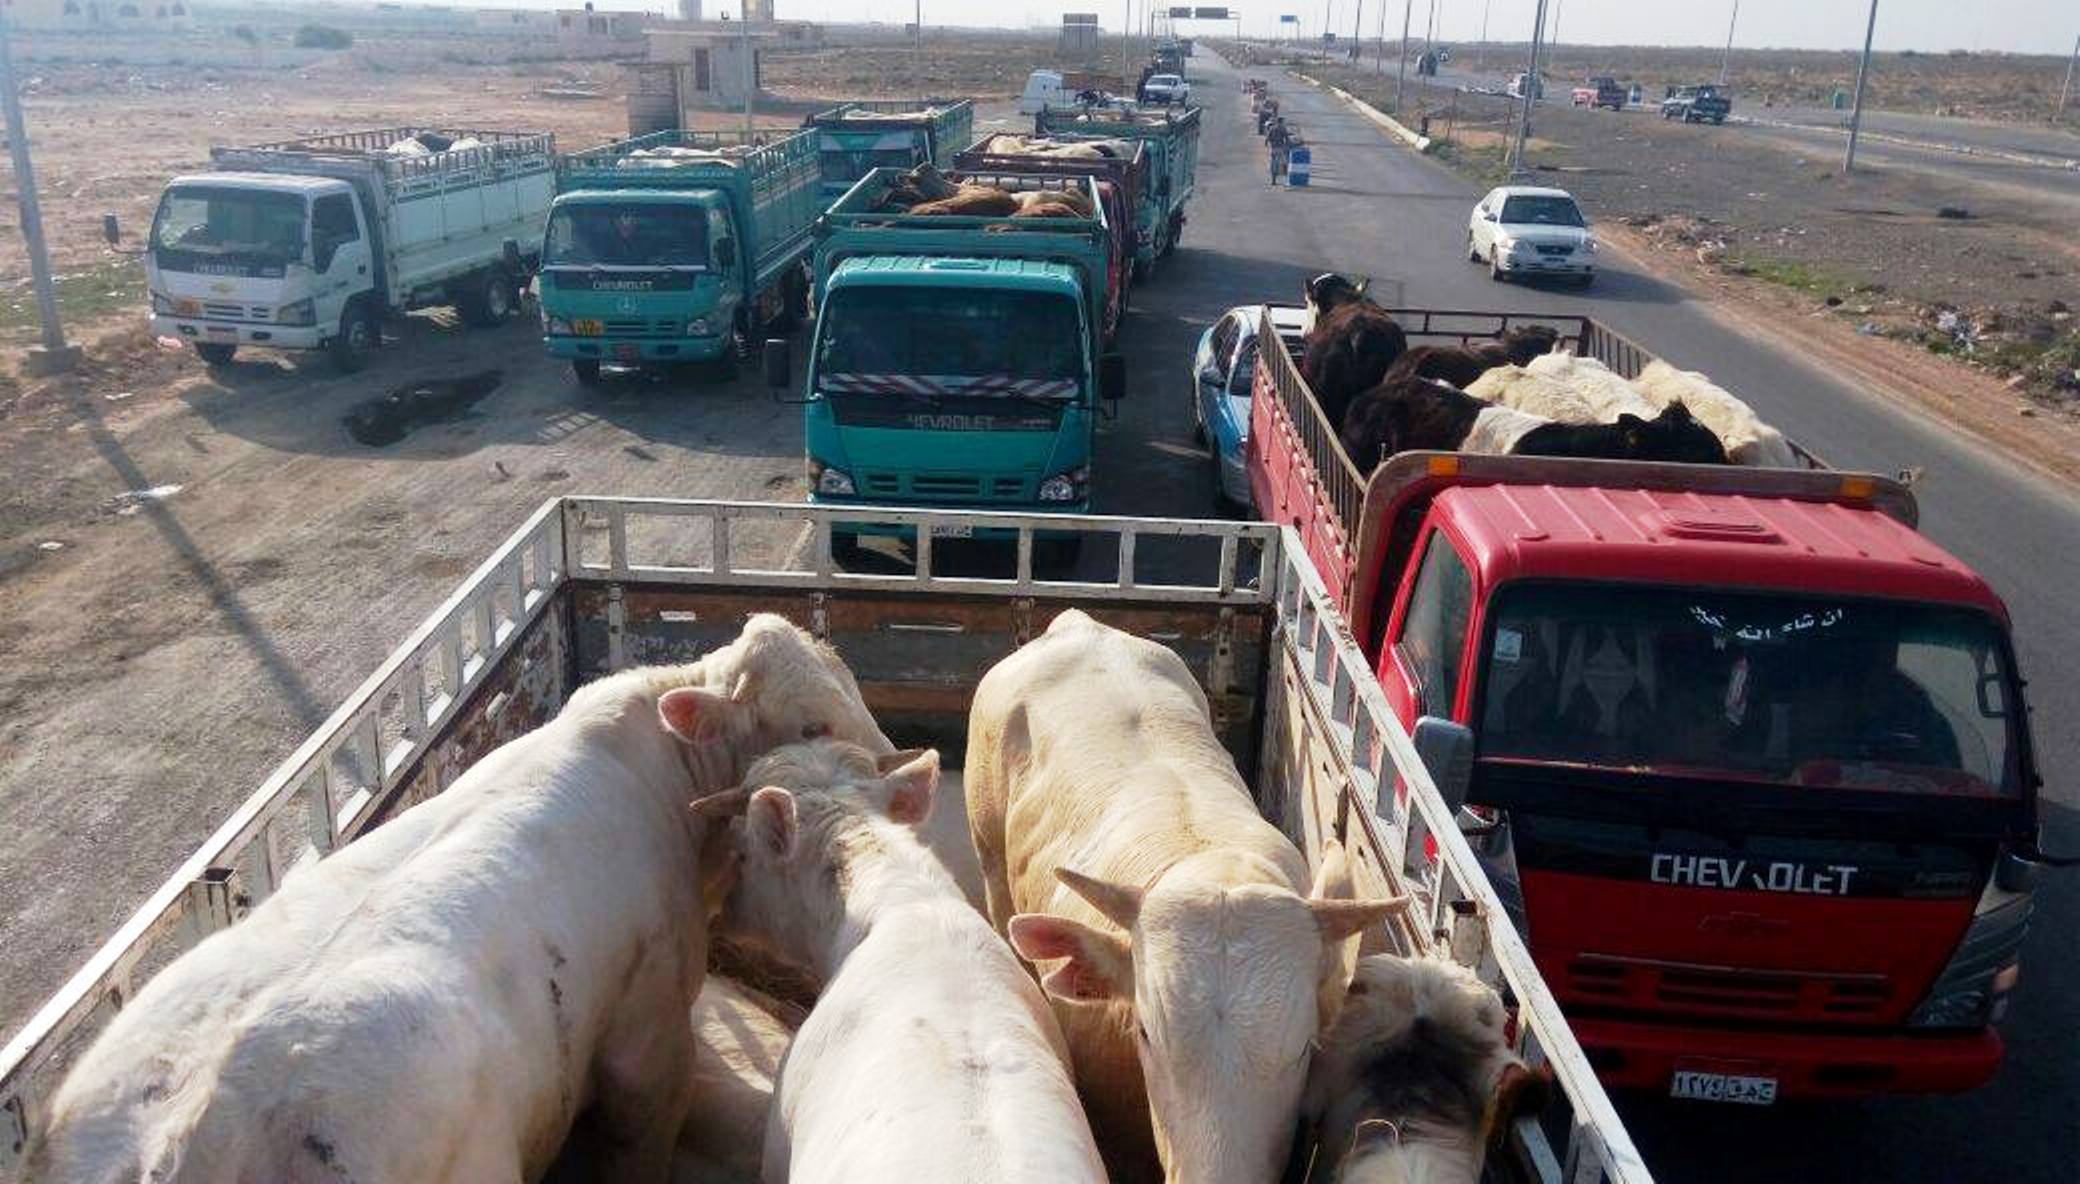 ضبط سيارات محملة بـ 70 رأس ماشية مهربة من ليبيا بمطروح